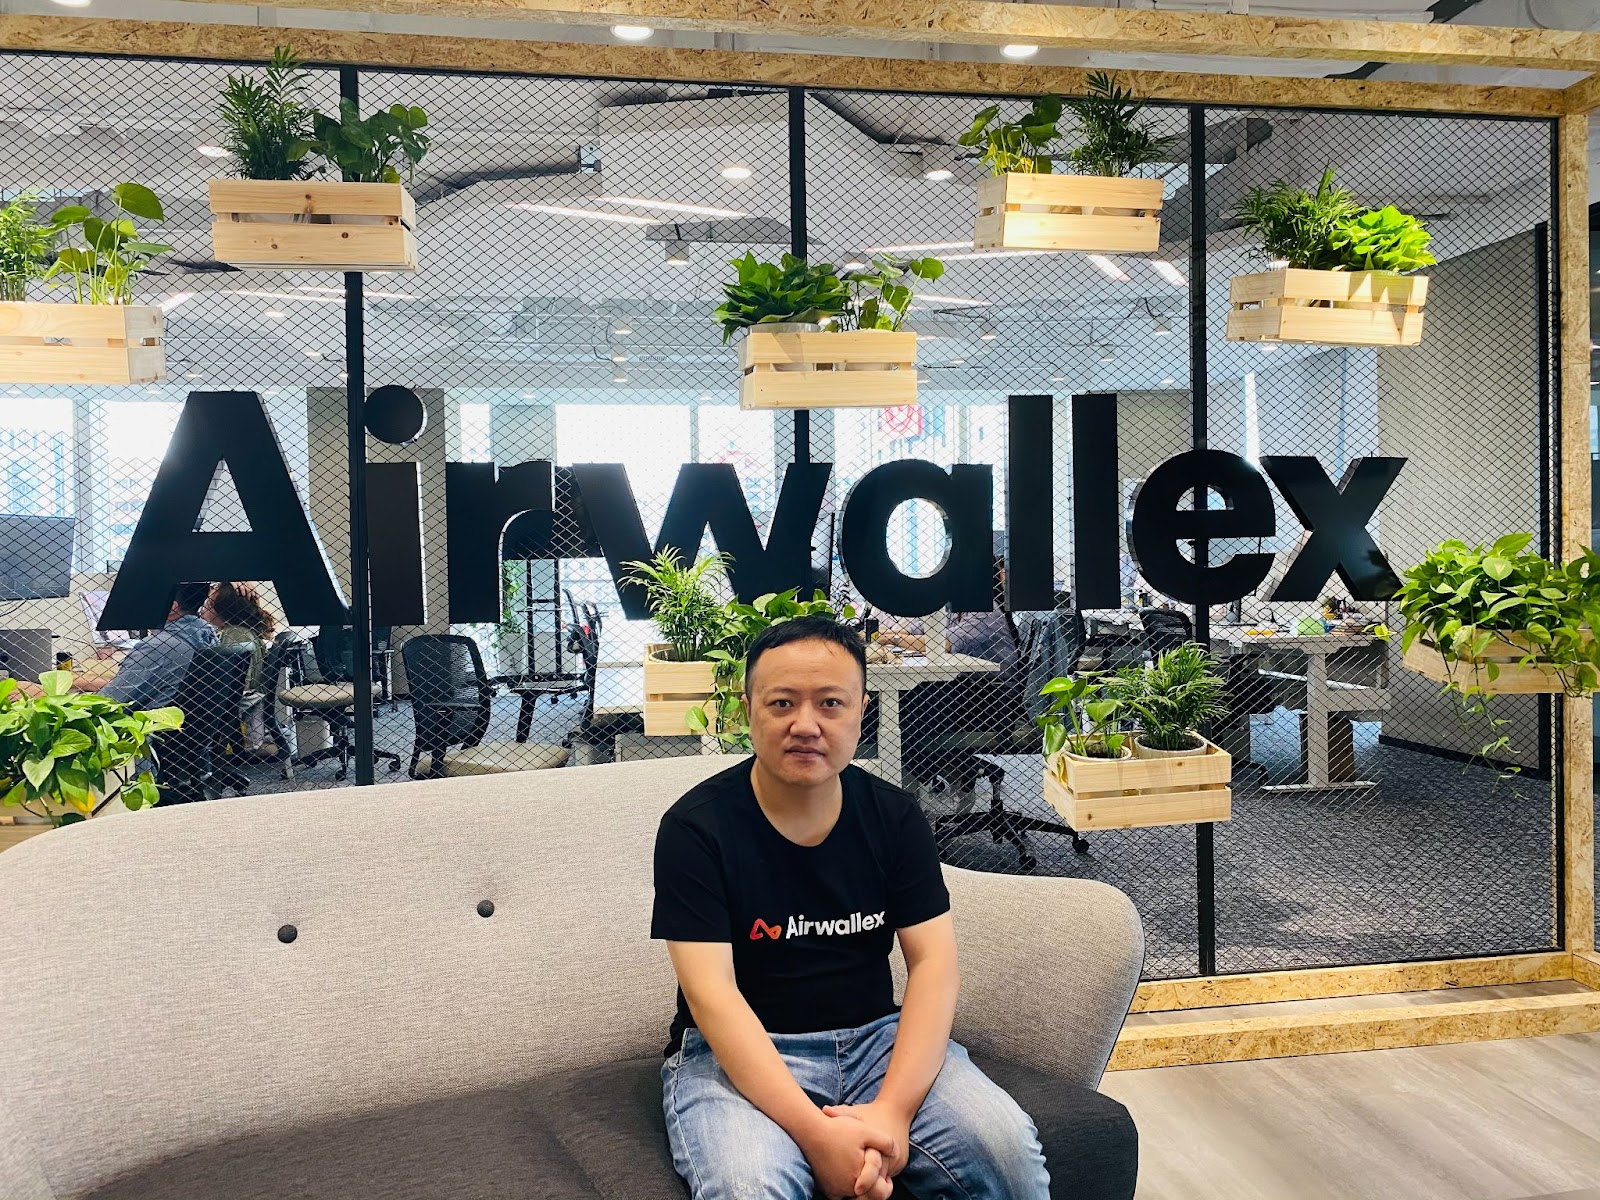 Apache APISIX 在 Airwallex 的应用 | 专访 Airwallex 技术平台负责人李杨